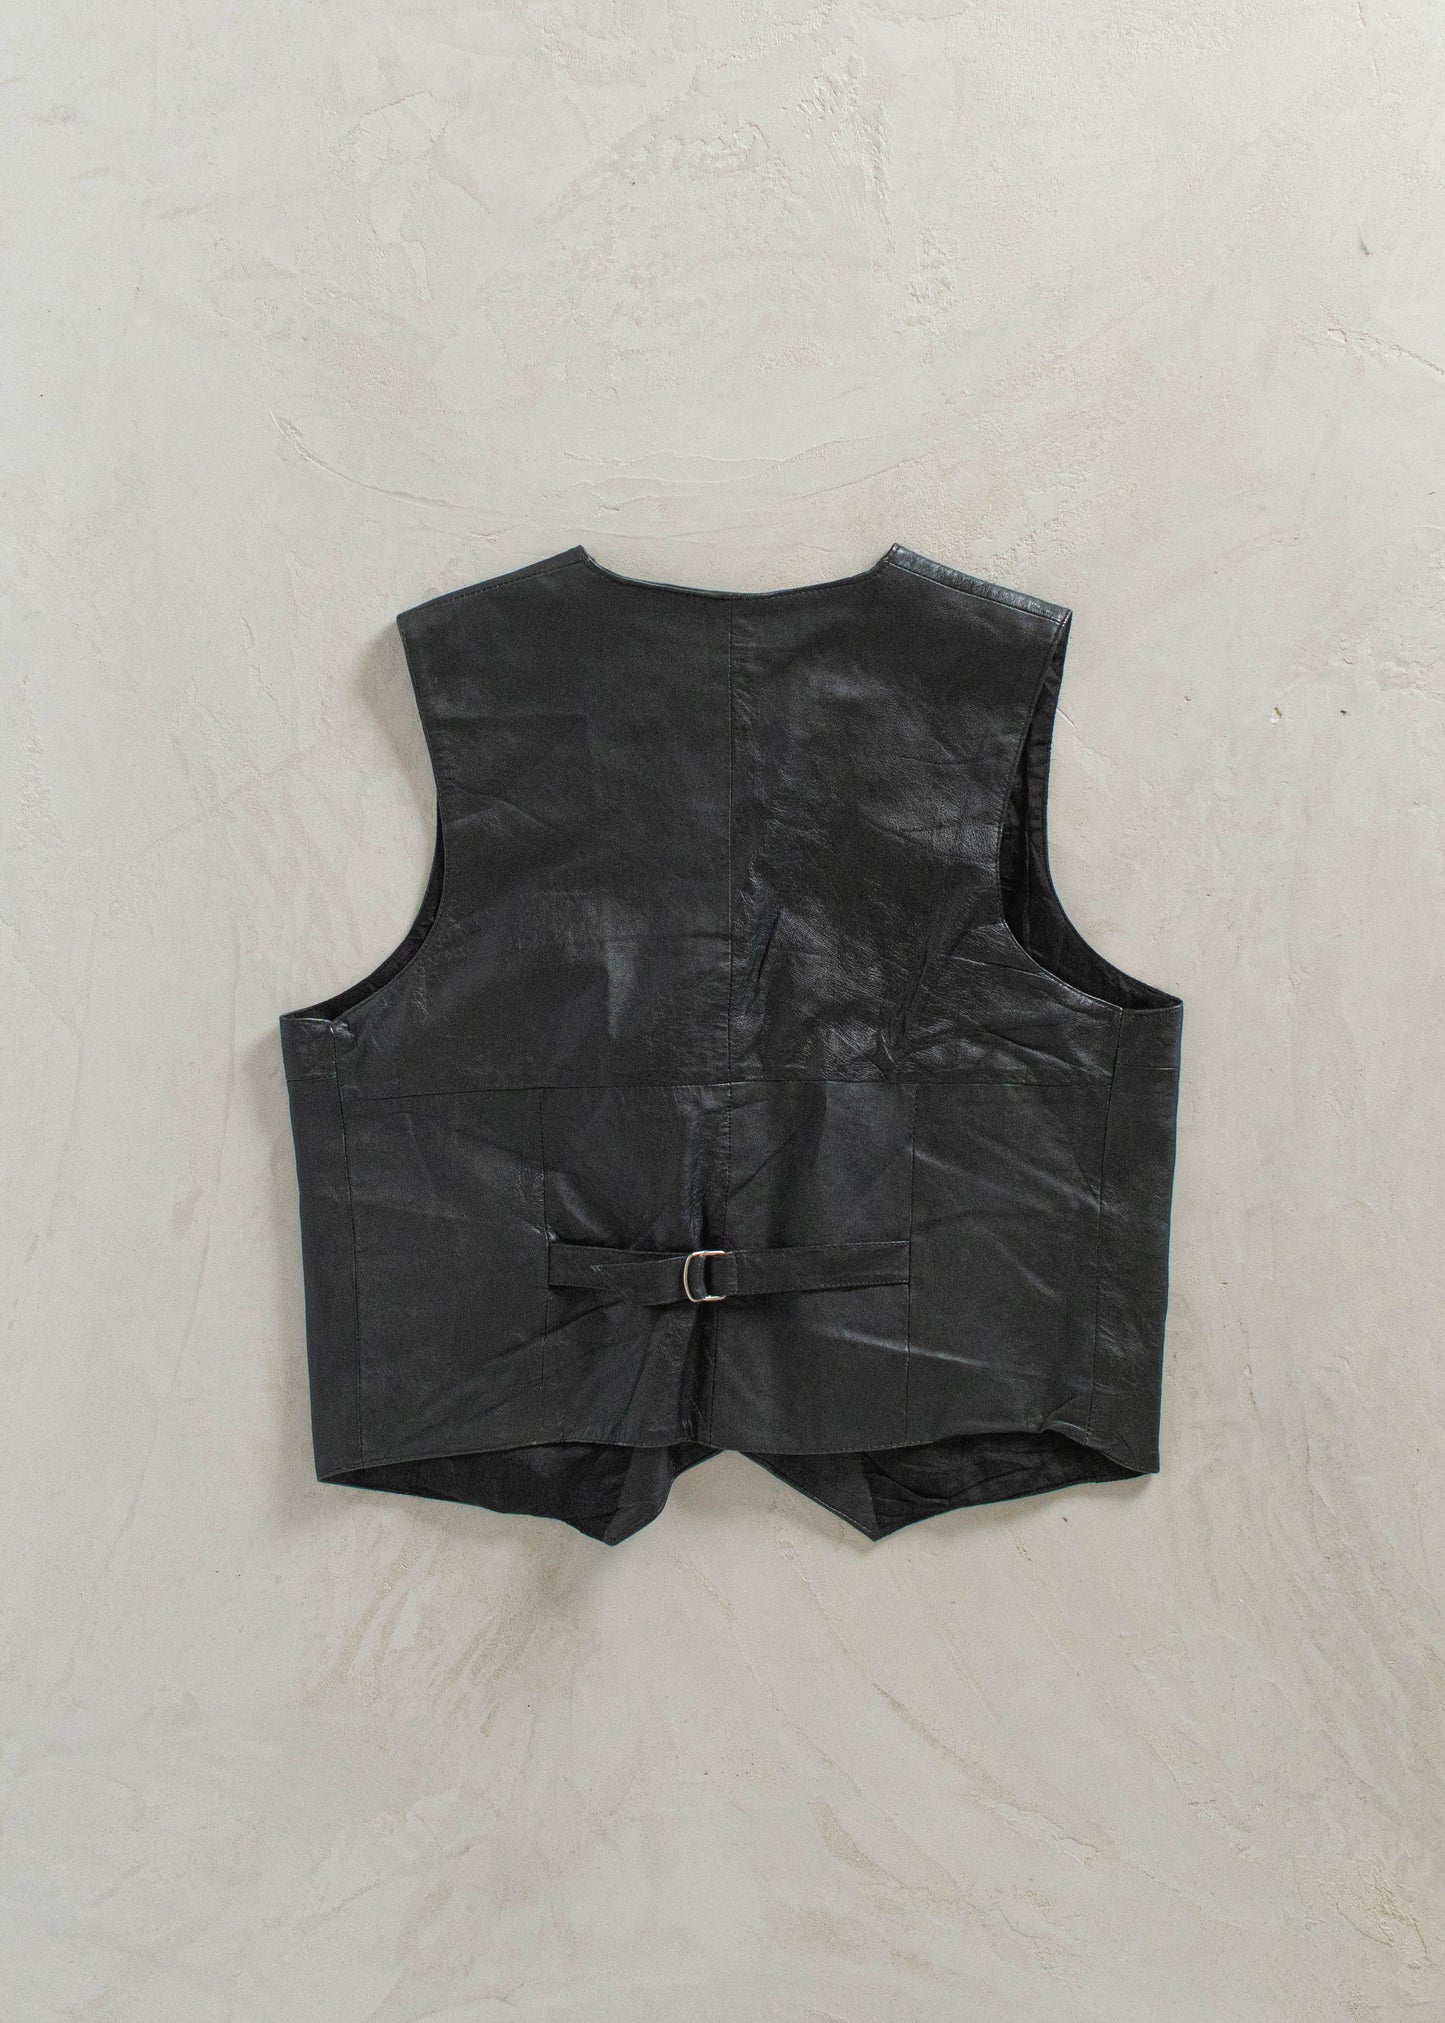 1980s Leather Vest Size Size L/XL